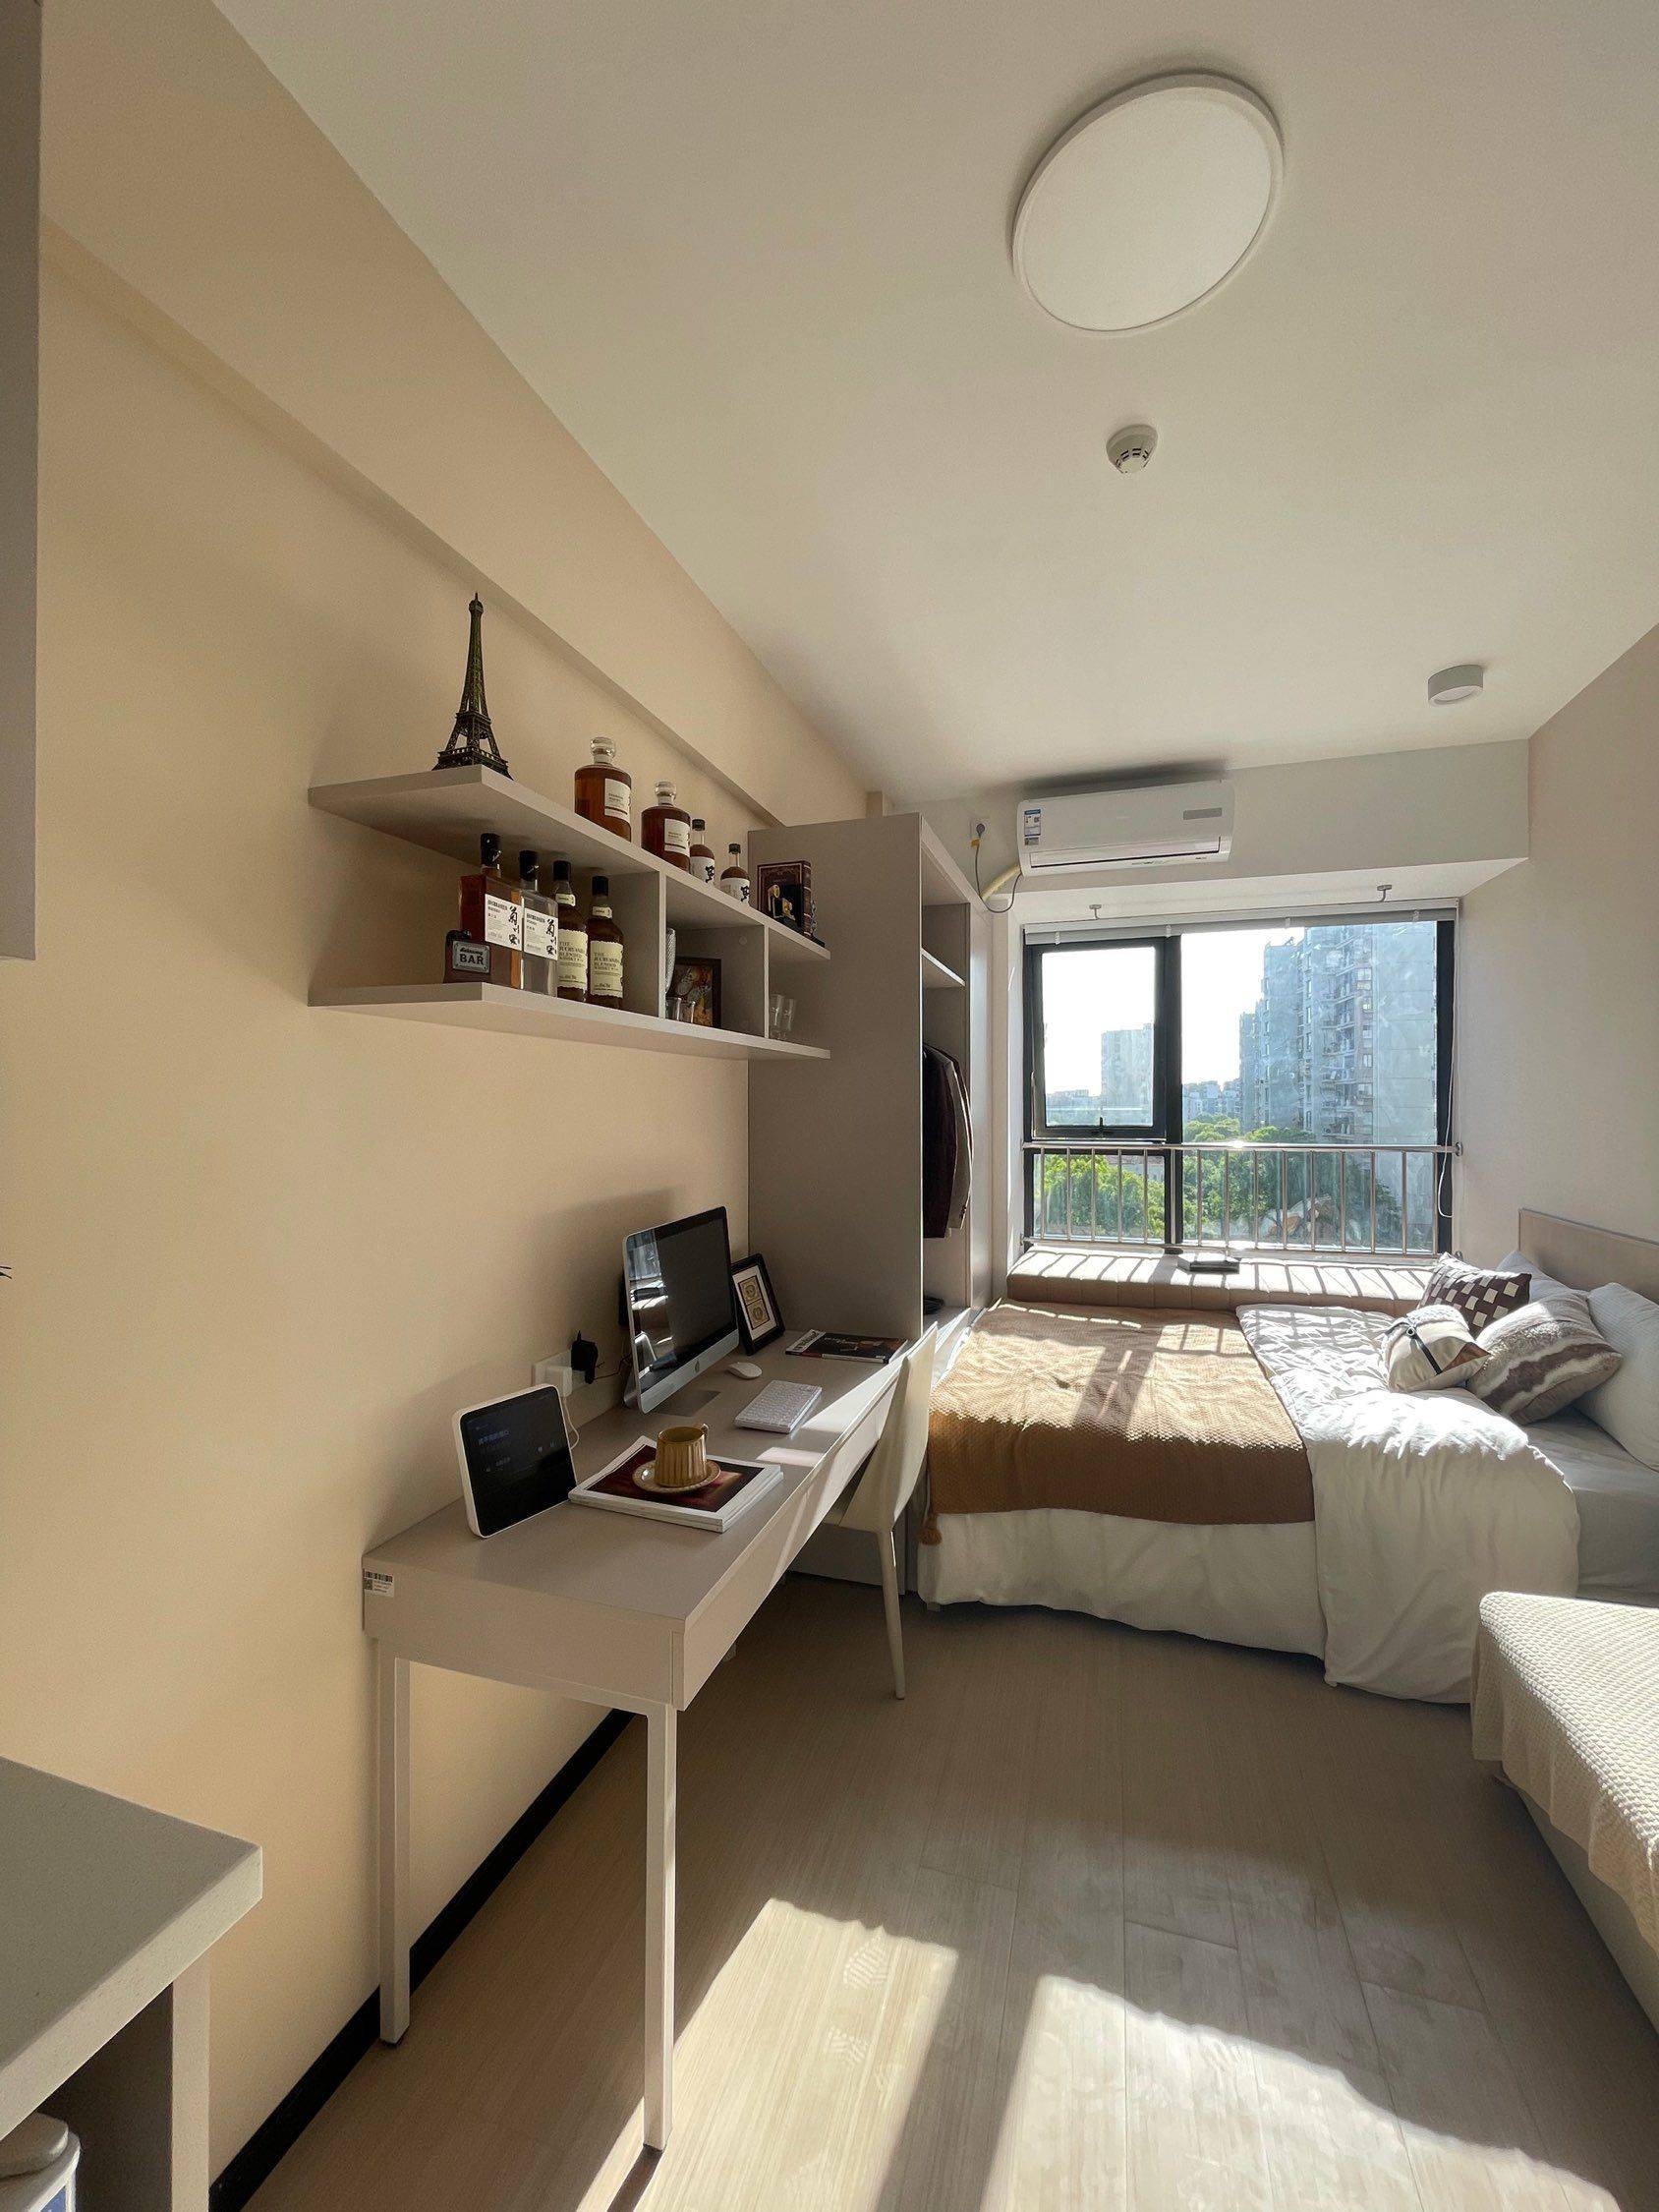 Shanghai-Putuo-Cozy Home,Clean&Comfy,No Gender Limit,“Friends”,Pet Friendly